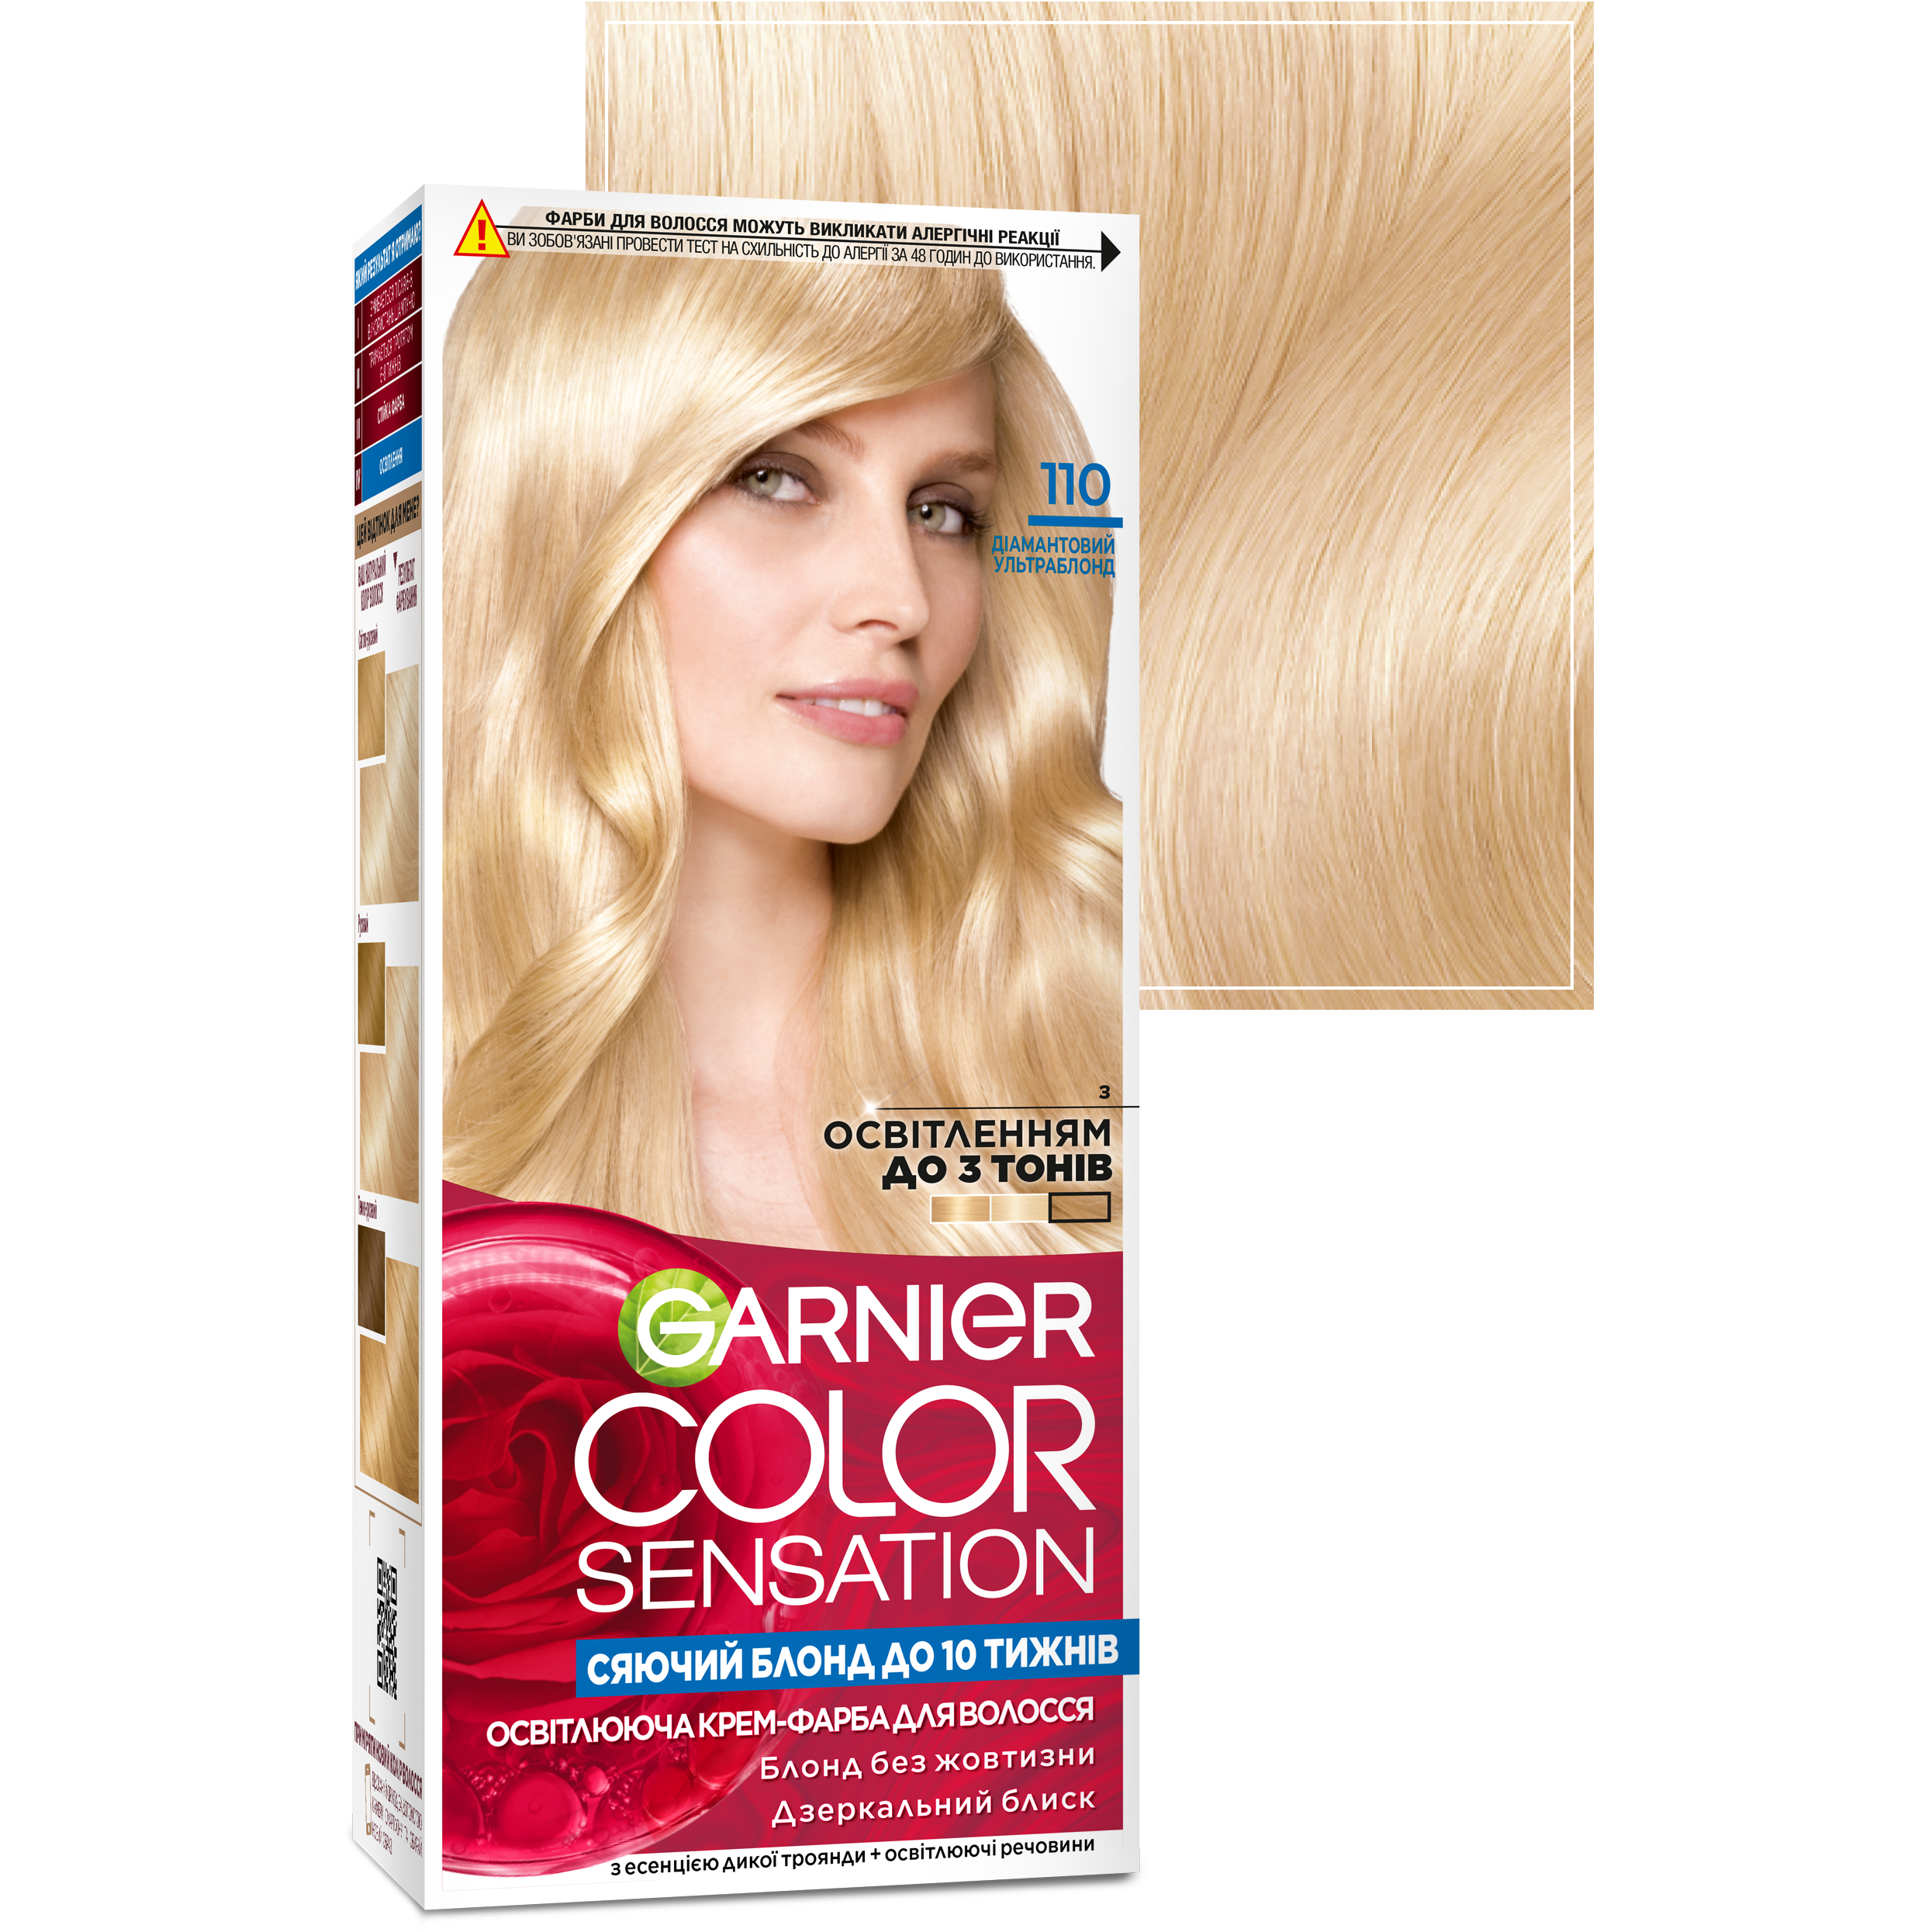 Краска для волос Garnier Color Sensation тон 110 (диамантовый ультраблонд), 110 мл (C5651612) - фото 2